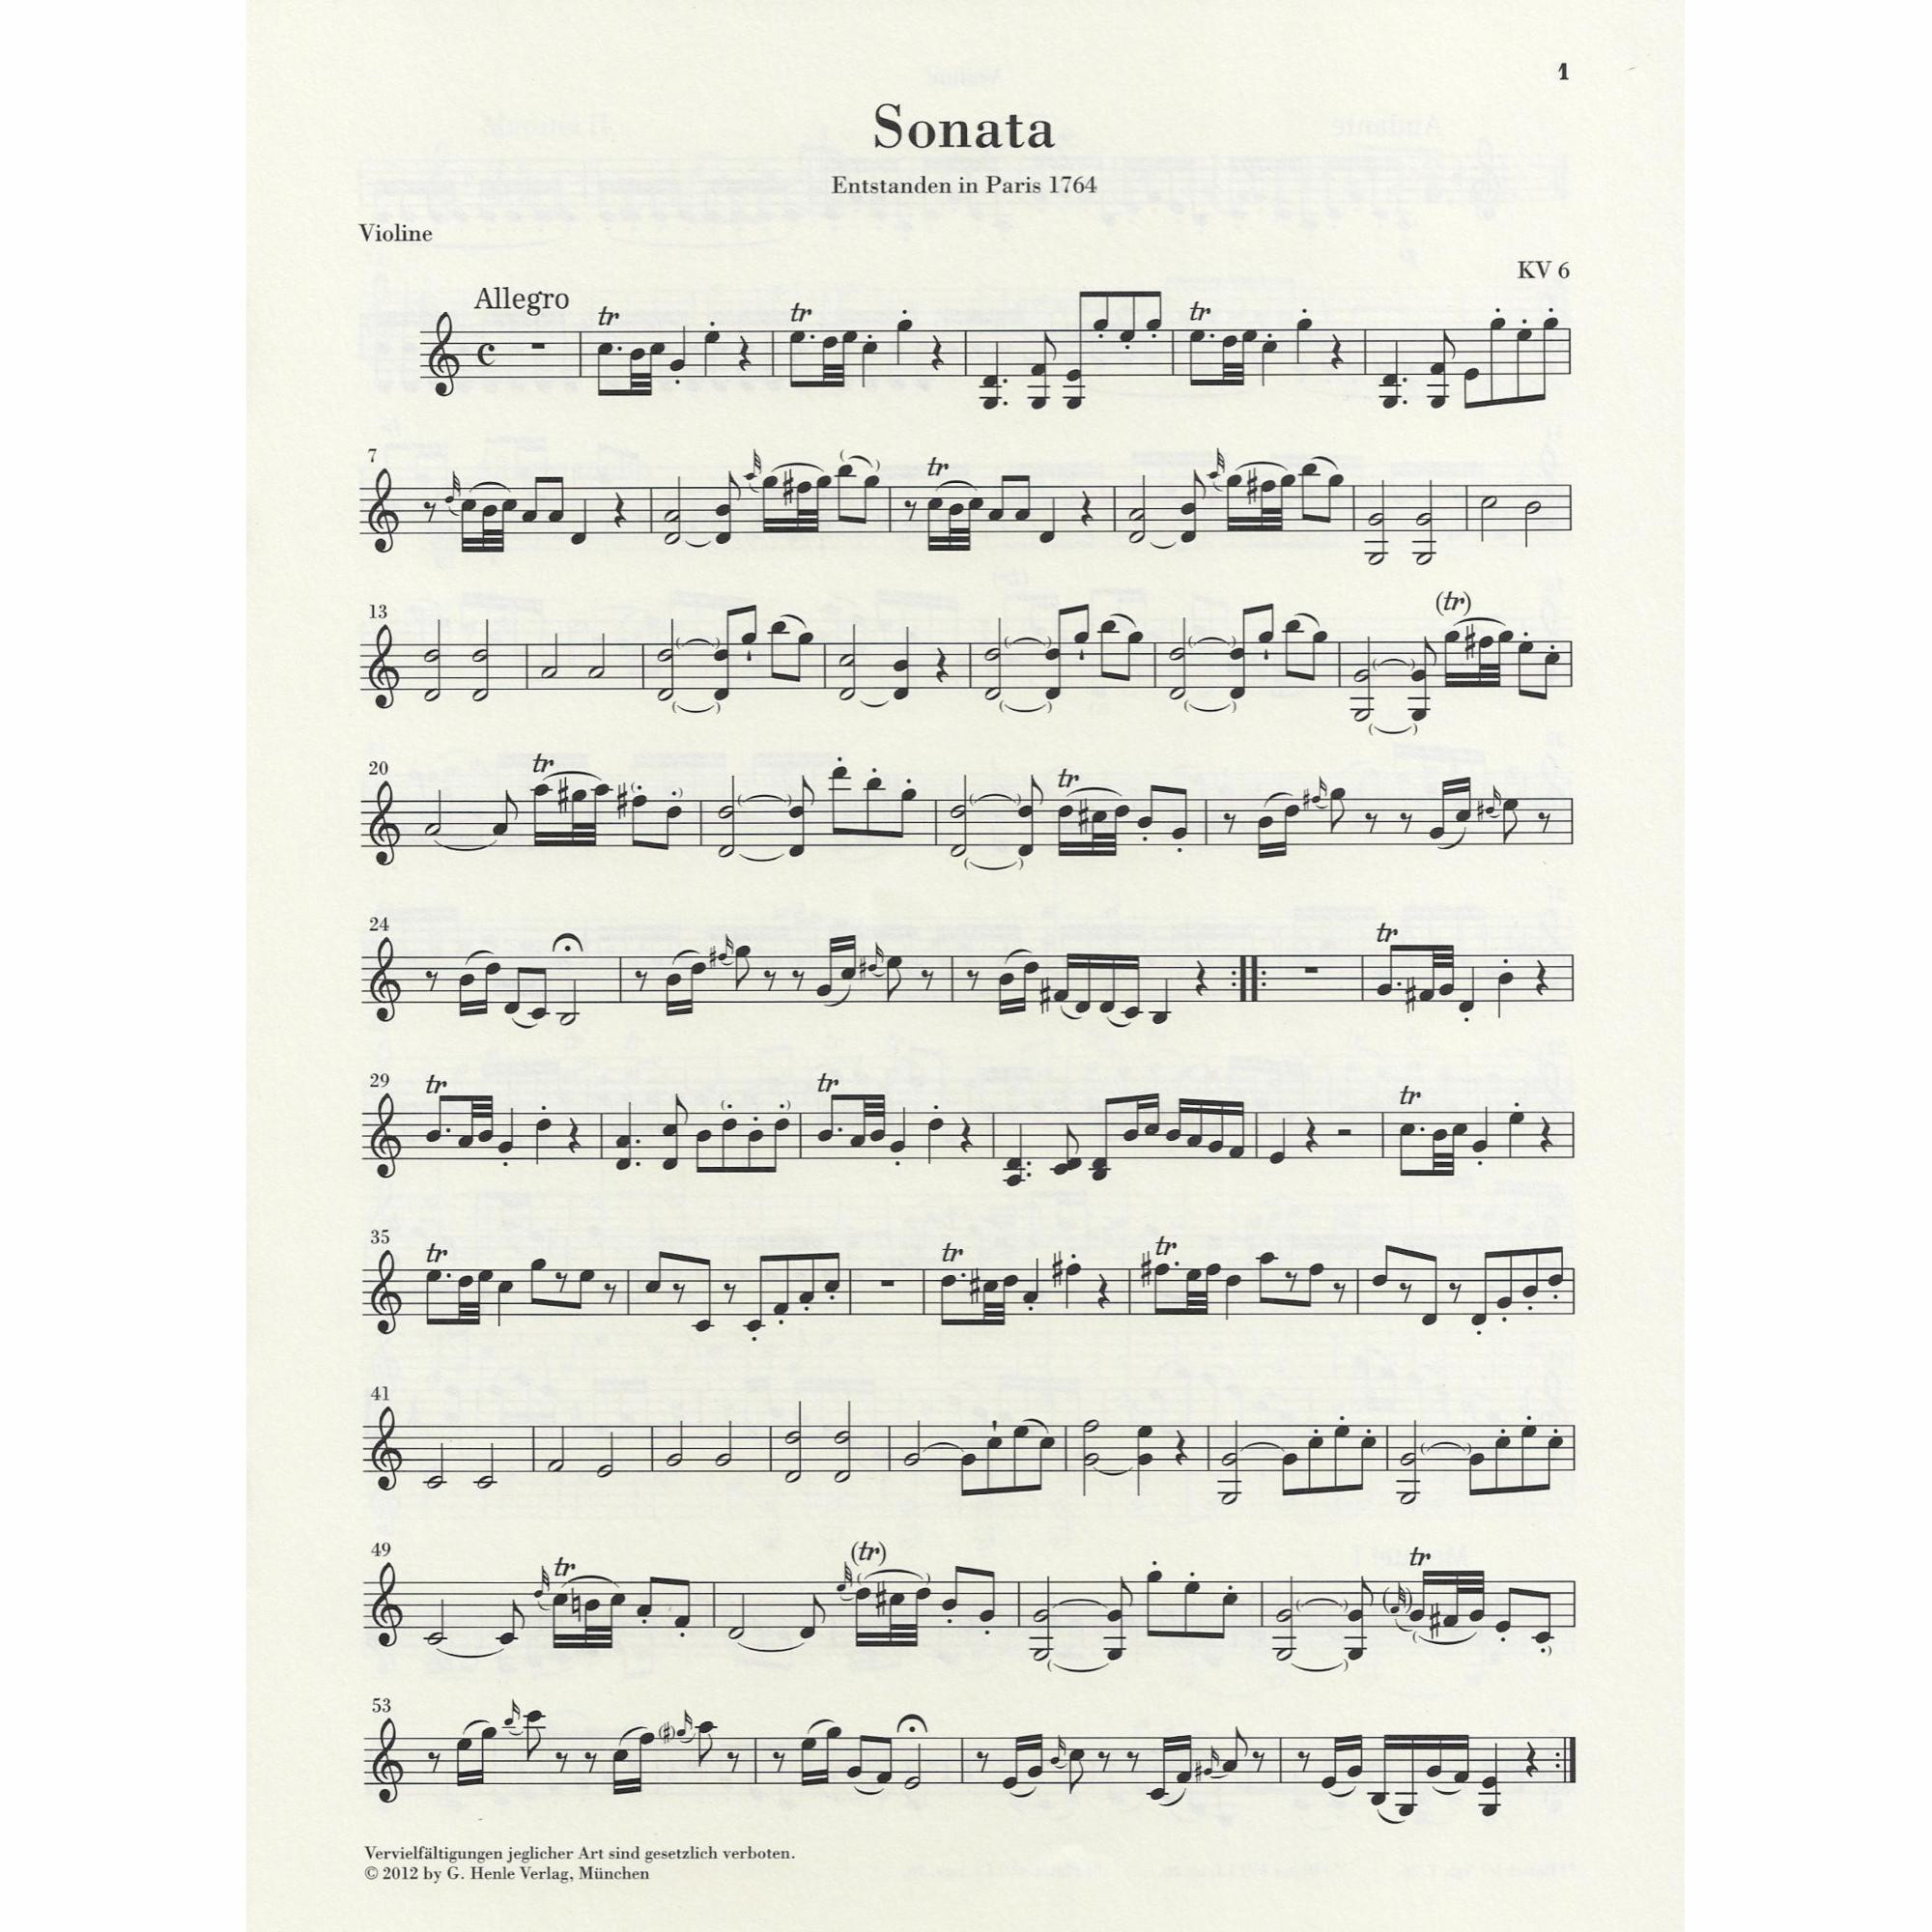 Sample: Vol. I, Urtext Violin Part